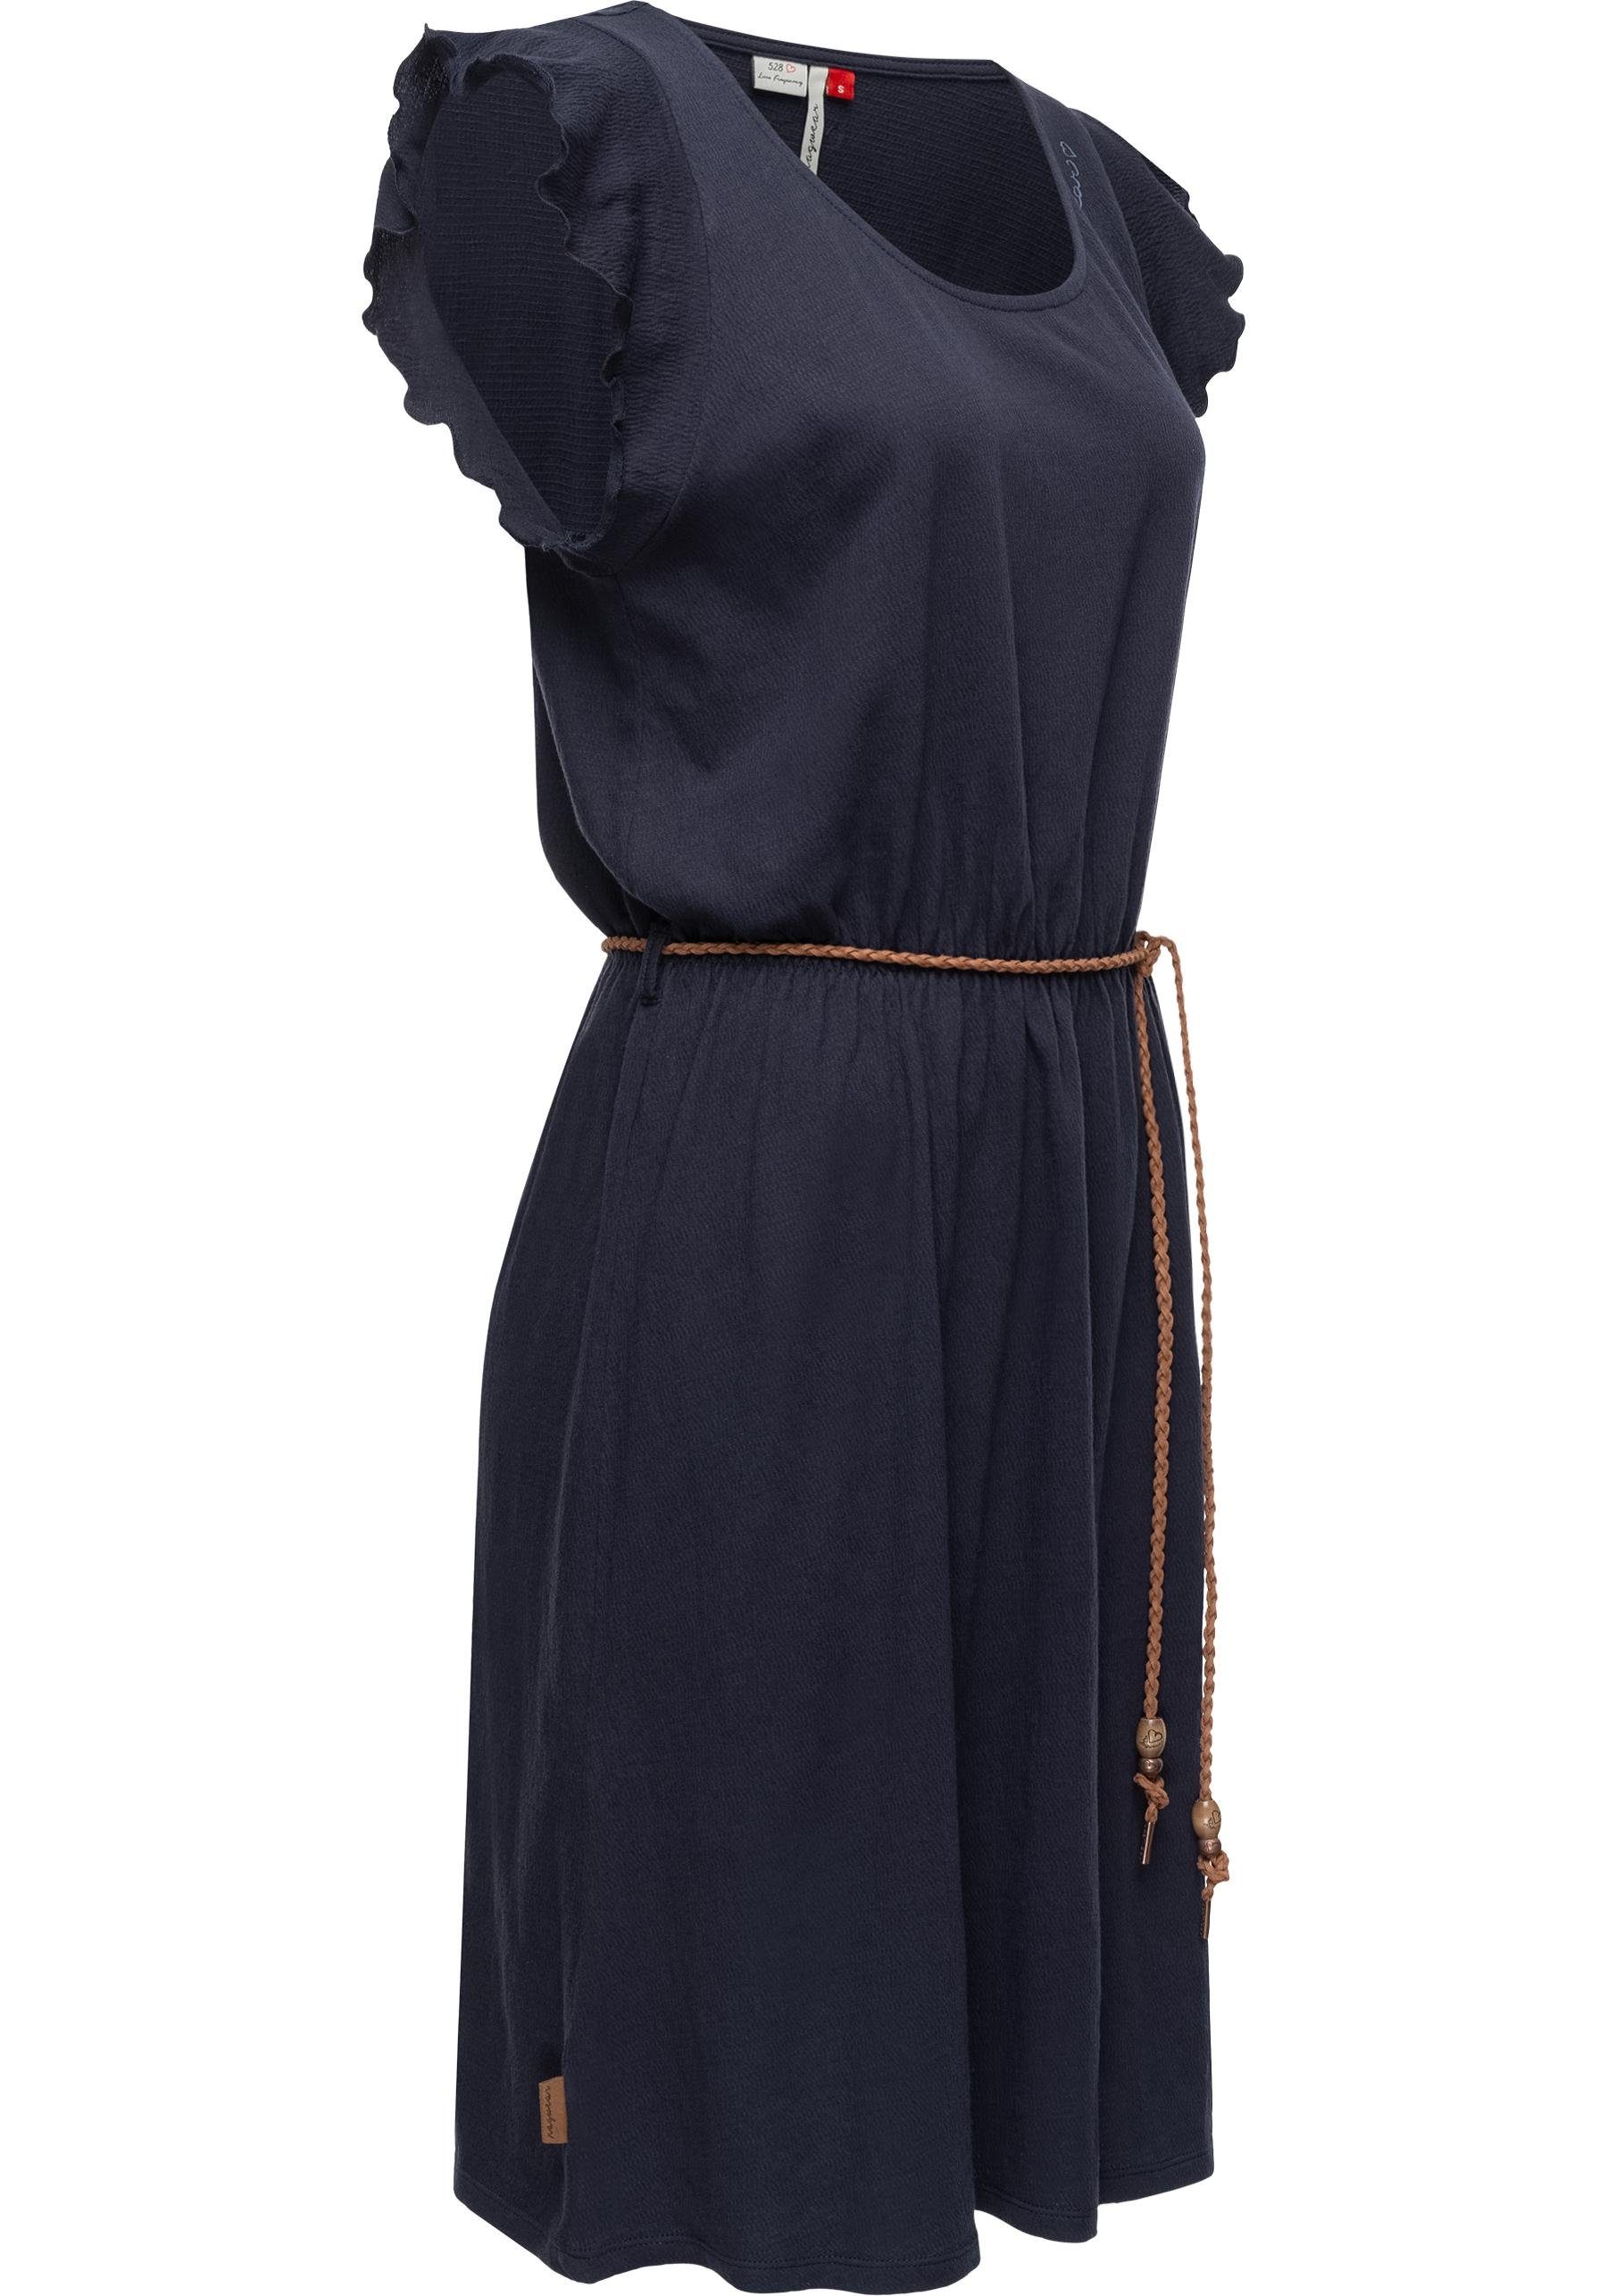 Ragwear Shirtkleid Cellia stylisches Sommerkleid mit Print und hochwertigem  Gürtel, Bequemes Kurzarm Minikleid mit süßem Rollsaum an den Ärmeln